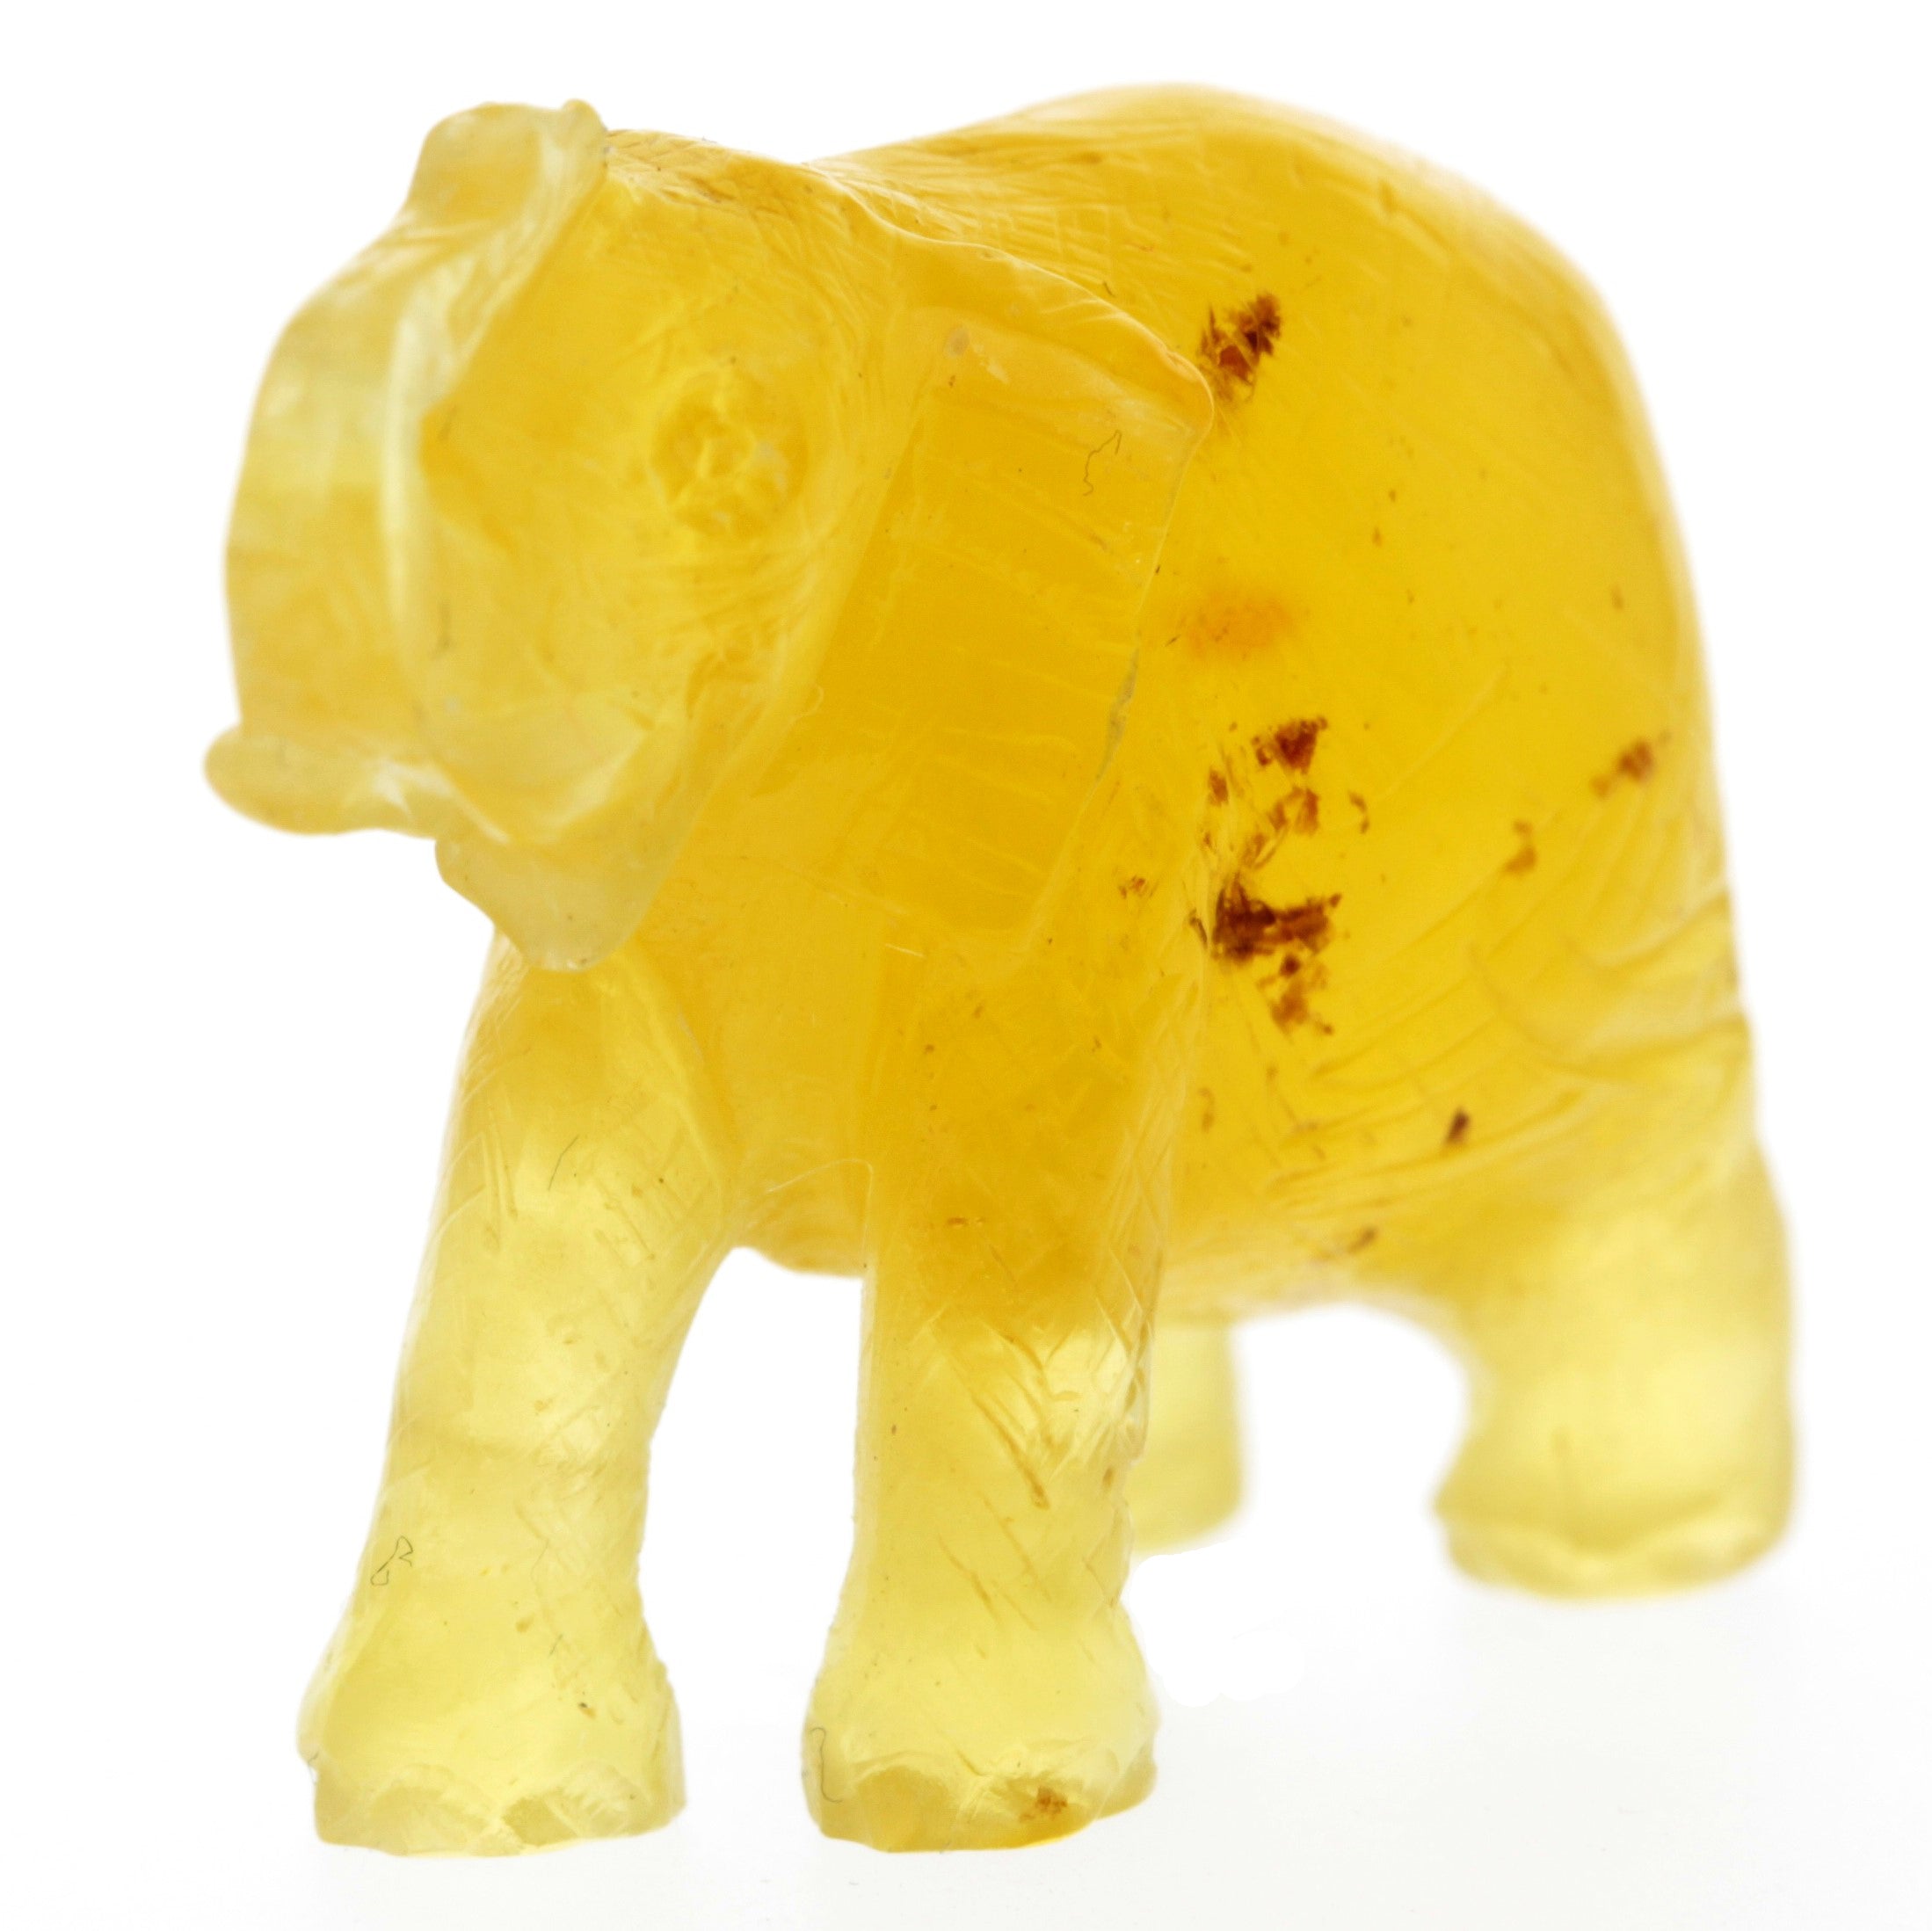 Figurine Superb Quality Handmade Natural Carved Elephant made of Genuine Baltic Amber - CRV92